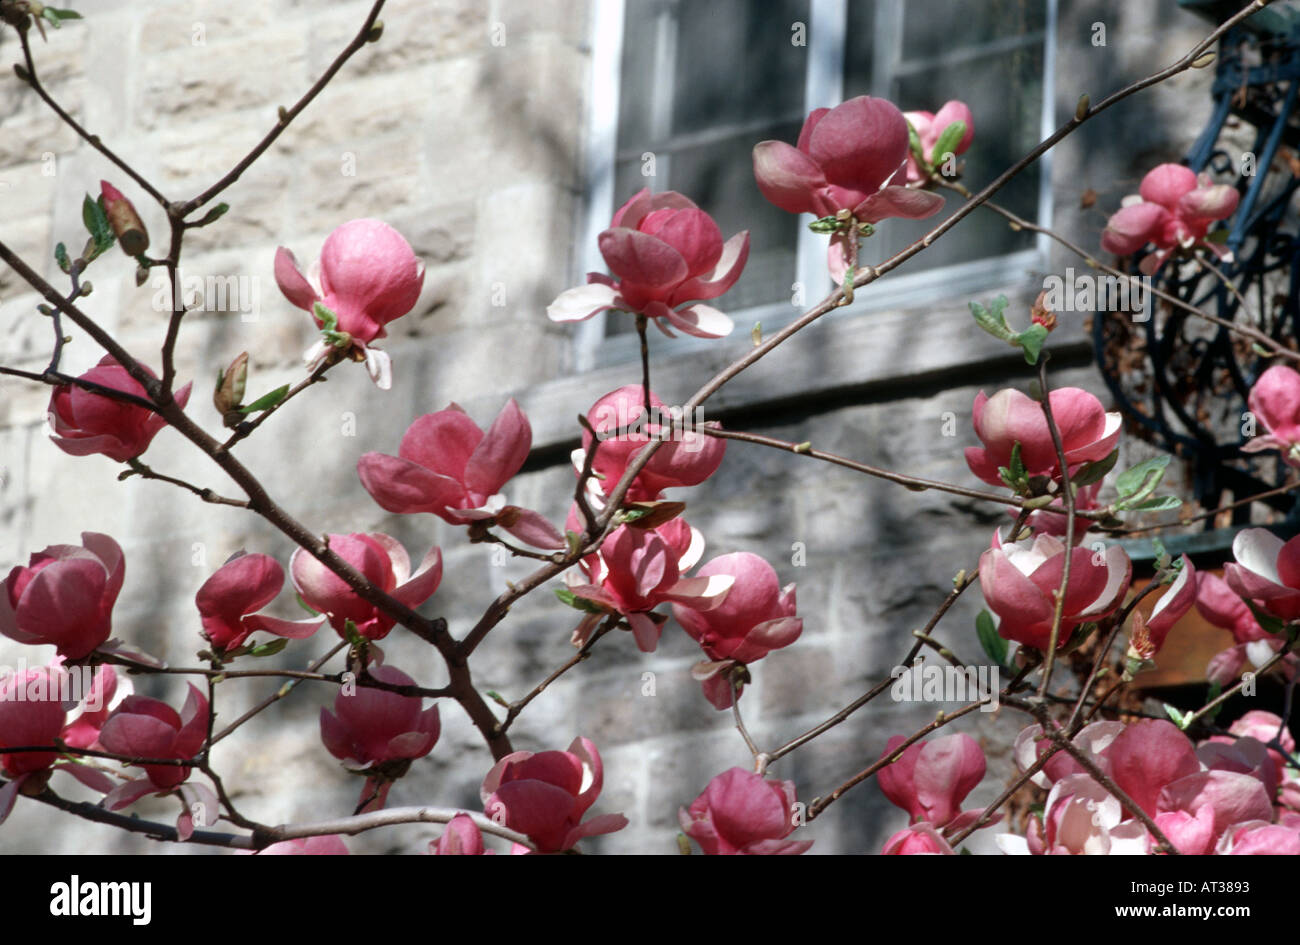 Magnolia blosom au printemps Montréal Québec Canada Banque D'Images